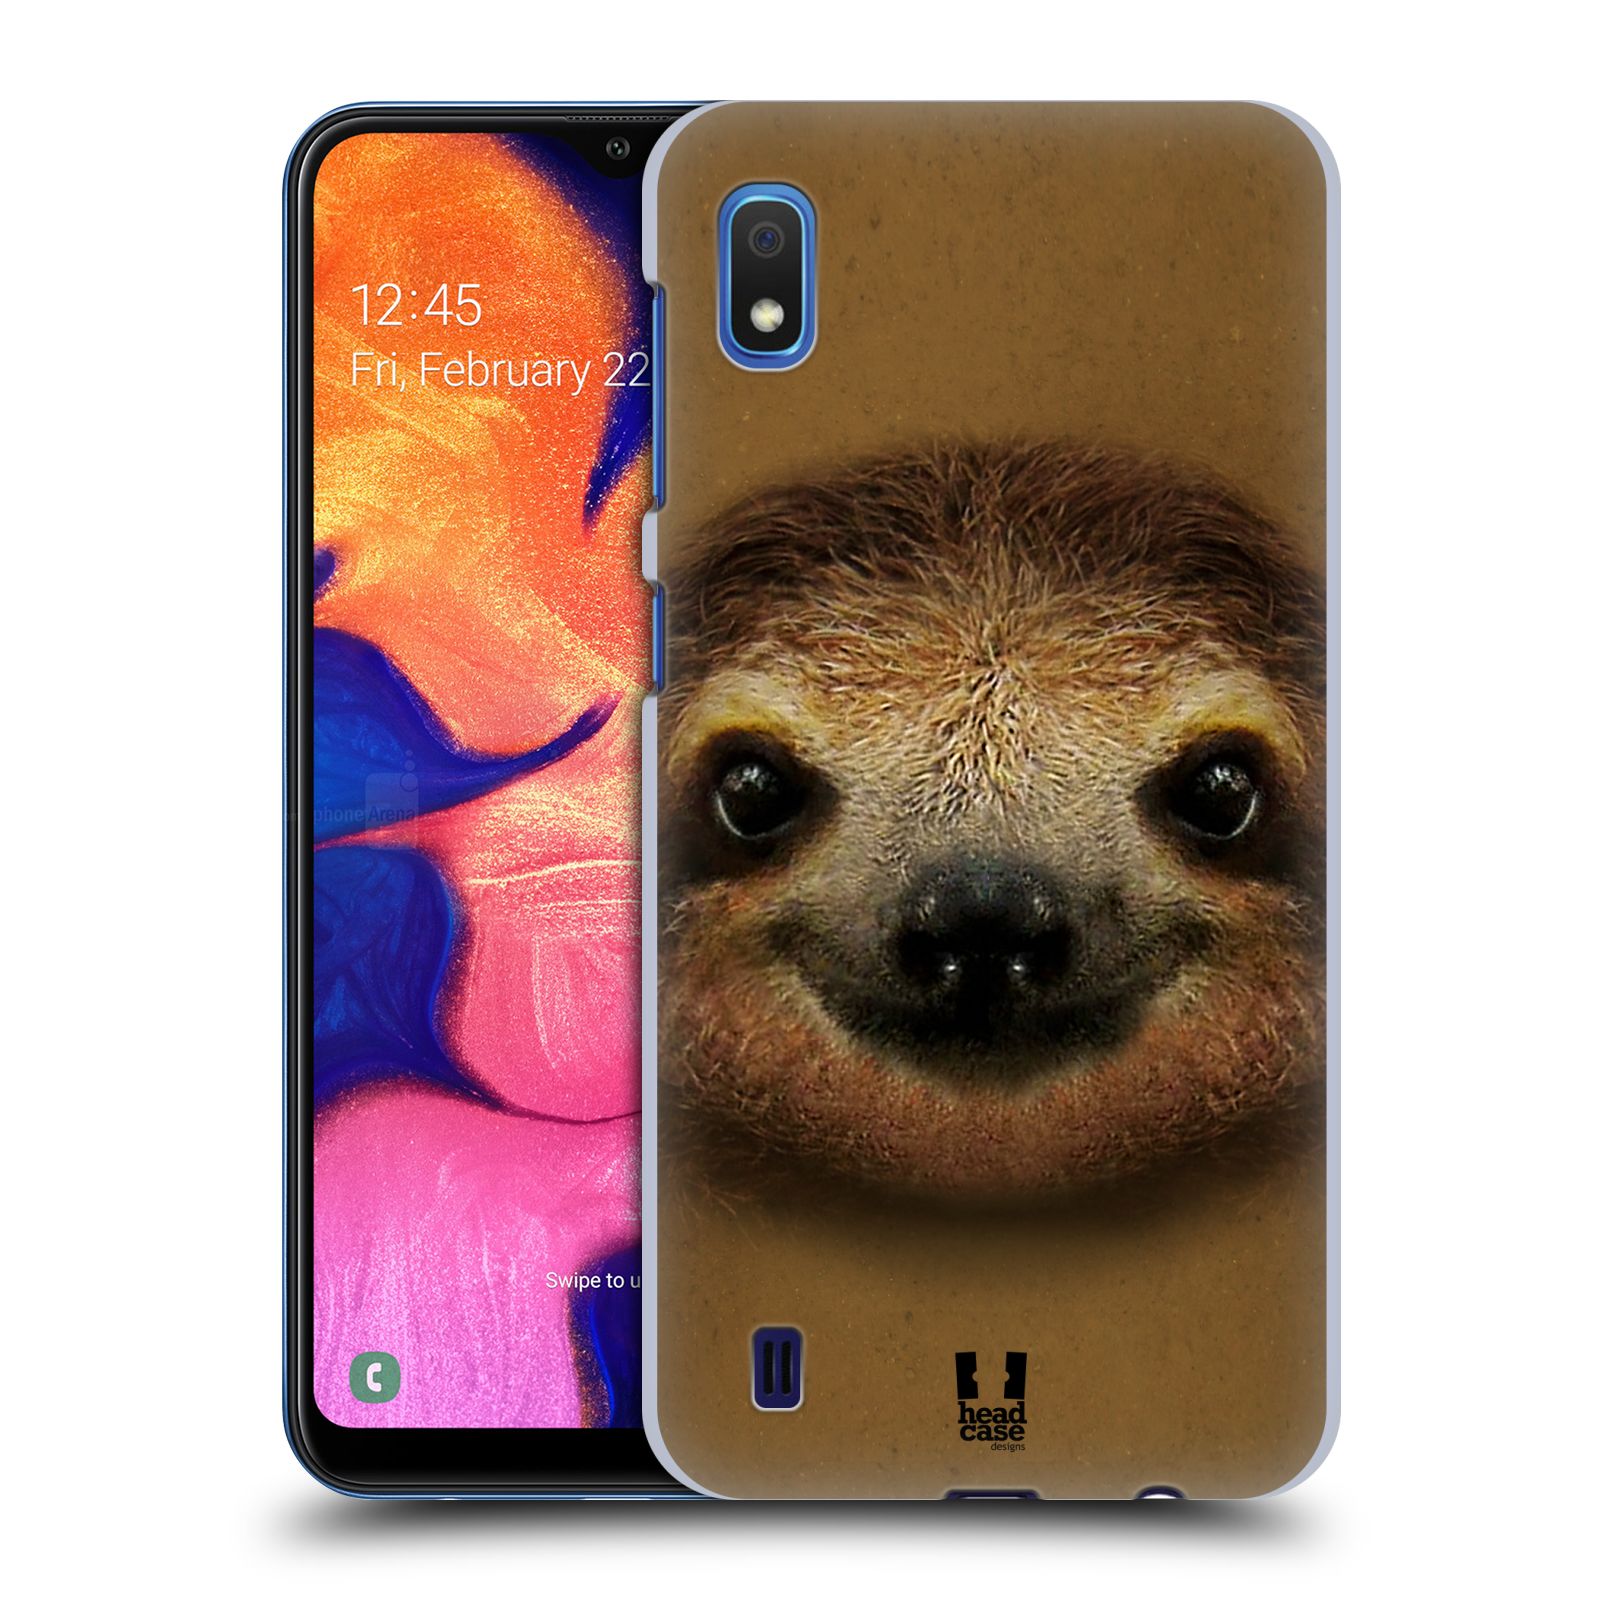 Pouzdro na mobil Samsung Galaxy A10 - HEAD CASE - vzor Zvířecí tváře 2 lenochod